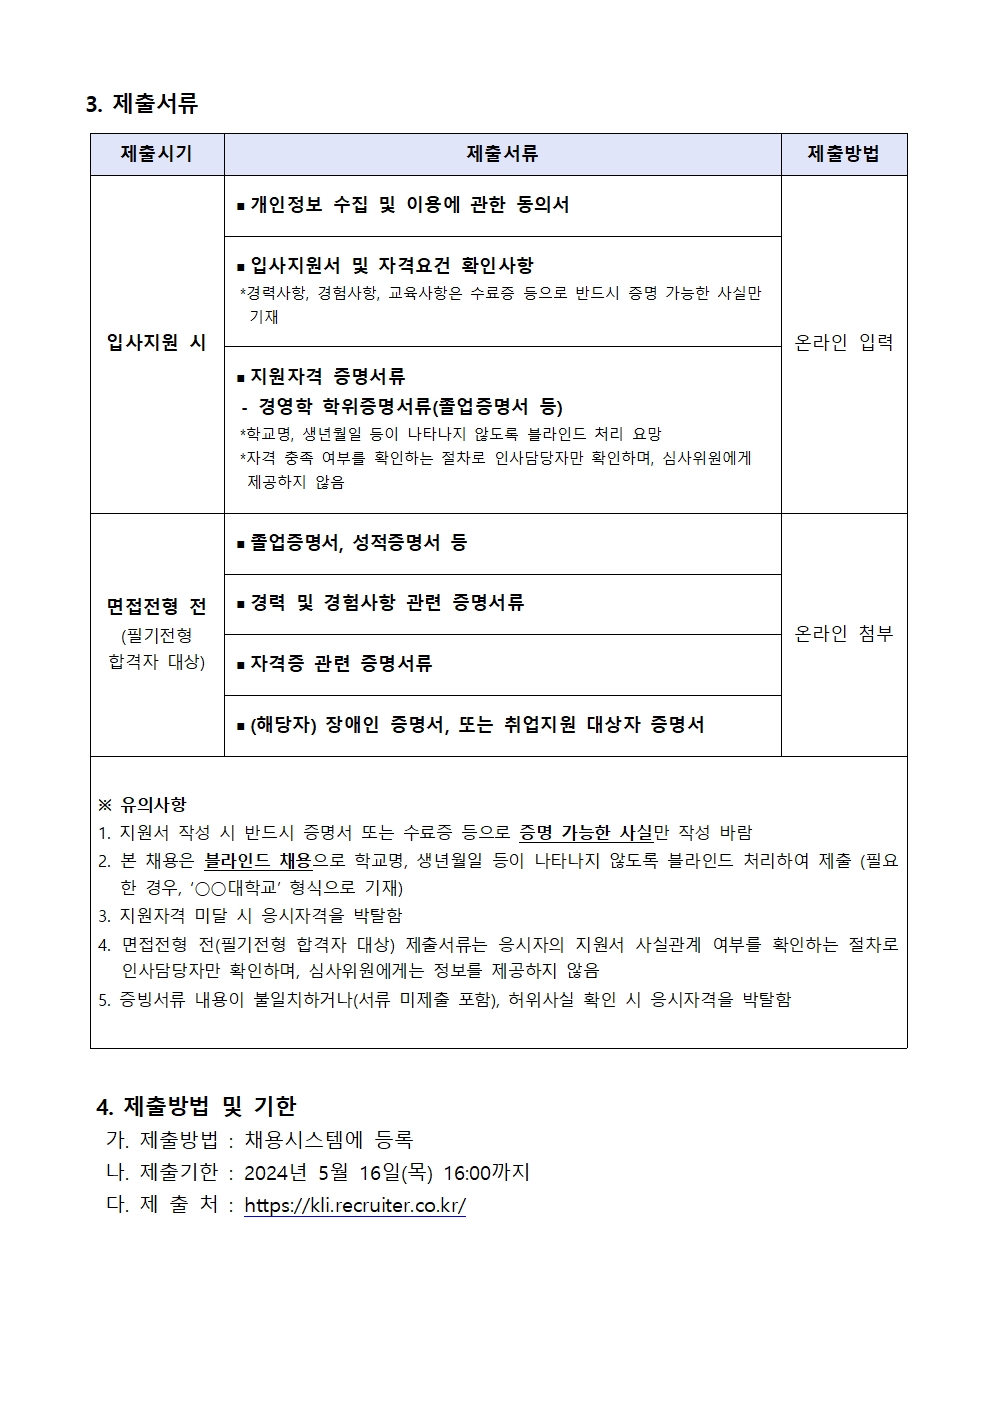 (2/4) 한국노동연구원 연구보조원 채용공고 - 자세한 내용은 하단 참조